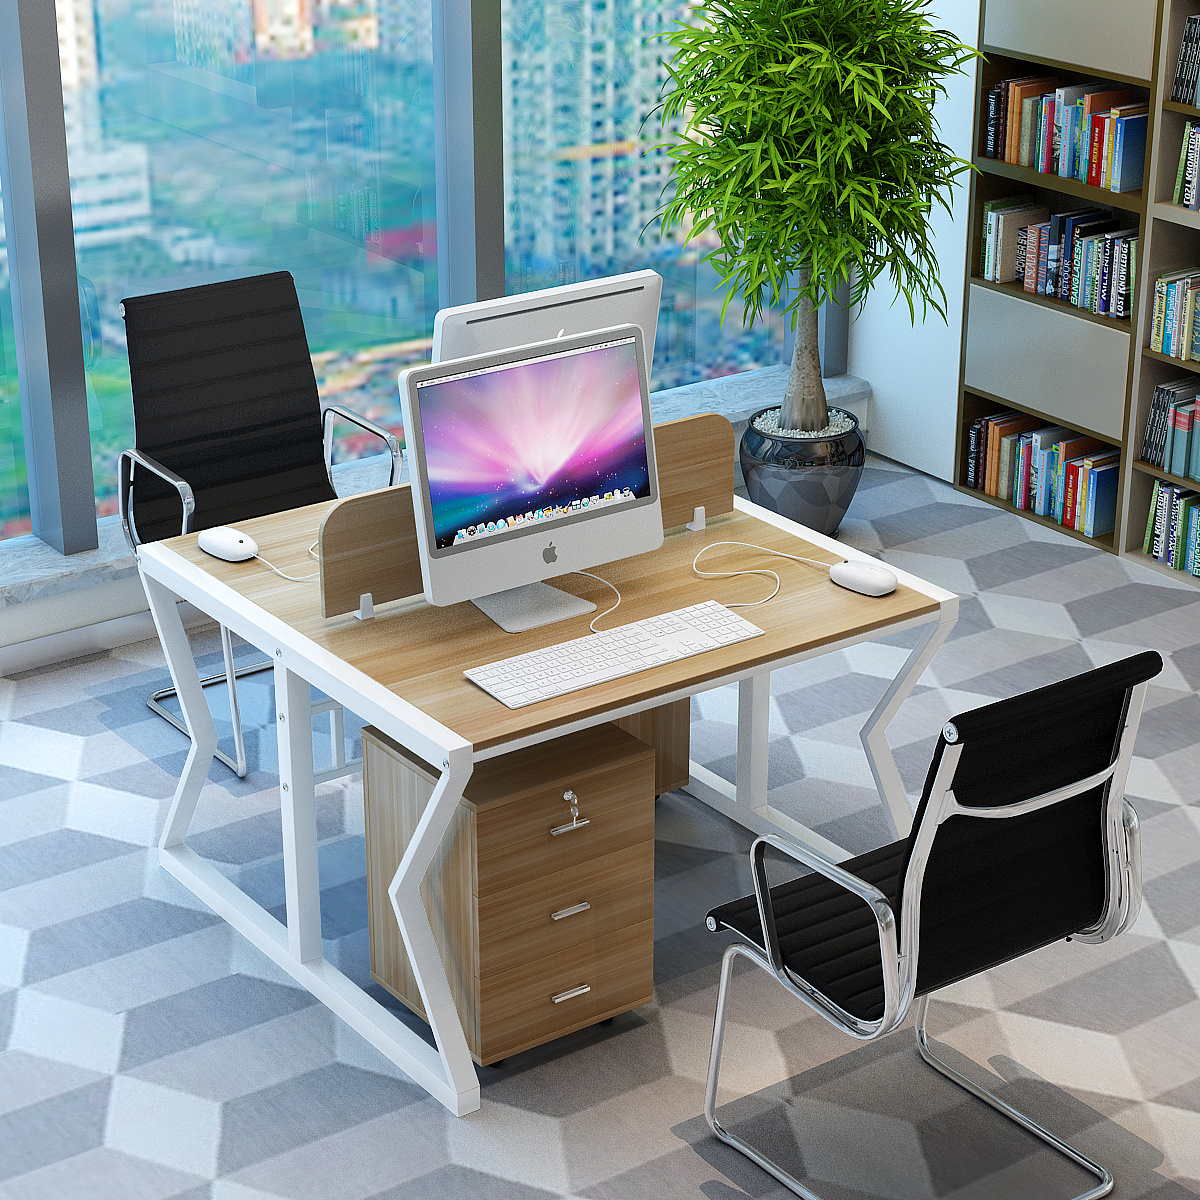 办公桌 员工 现代简约 板式钢木 两人位 四人位 职员电脑桌办公台-阿里巴巴